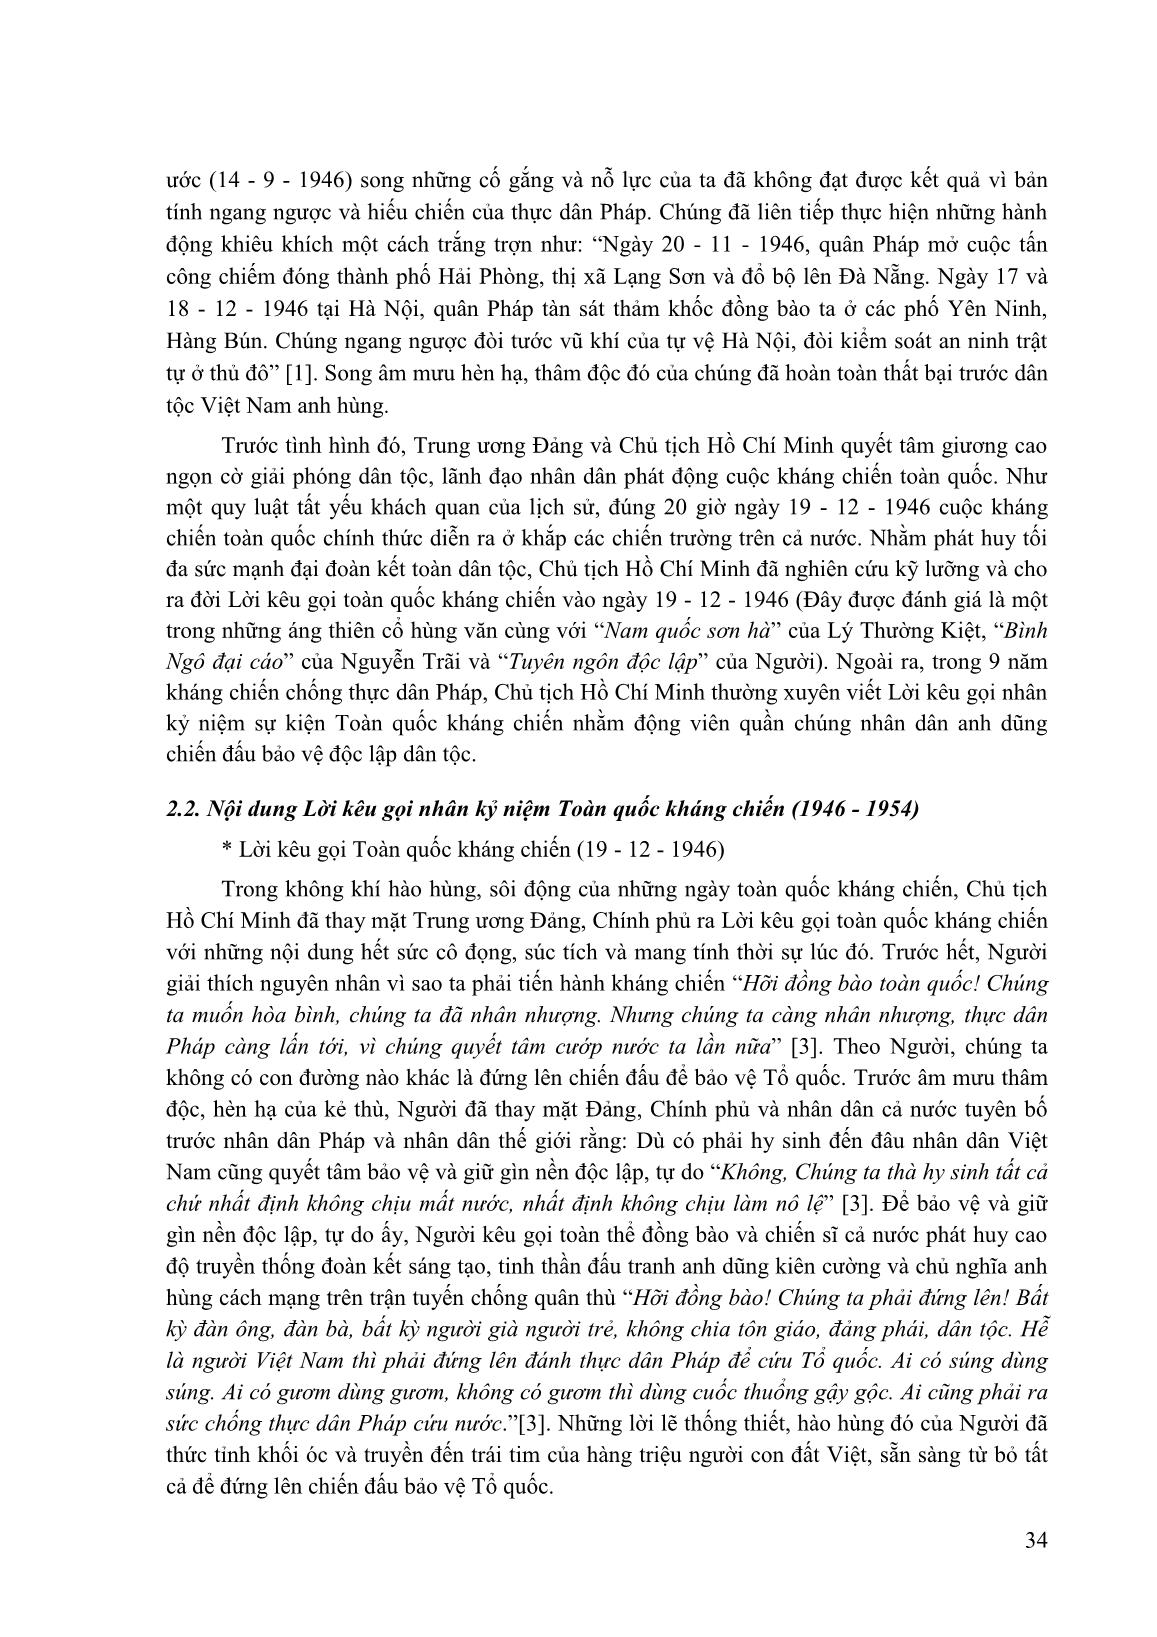 Tìm hiểu lời kêu gọi nhân kỷ niệm toàn quốc kháng chiến của chủ tịch Hồ Chí Minh trang 2